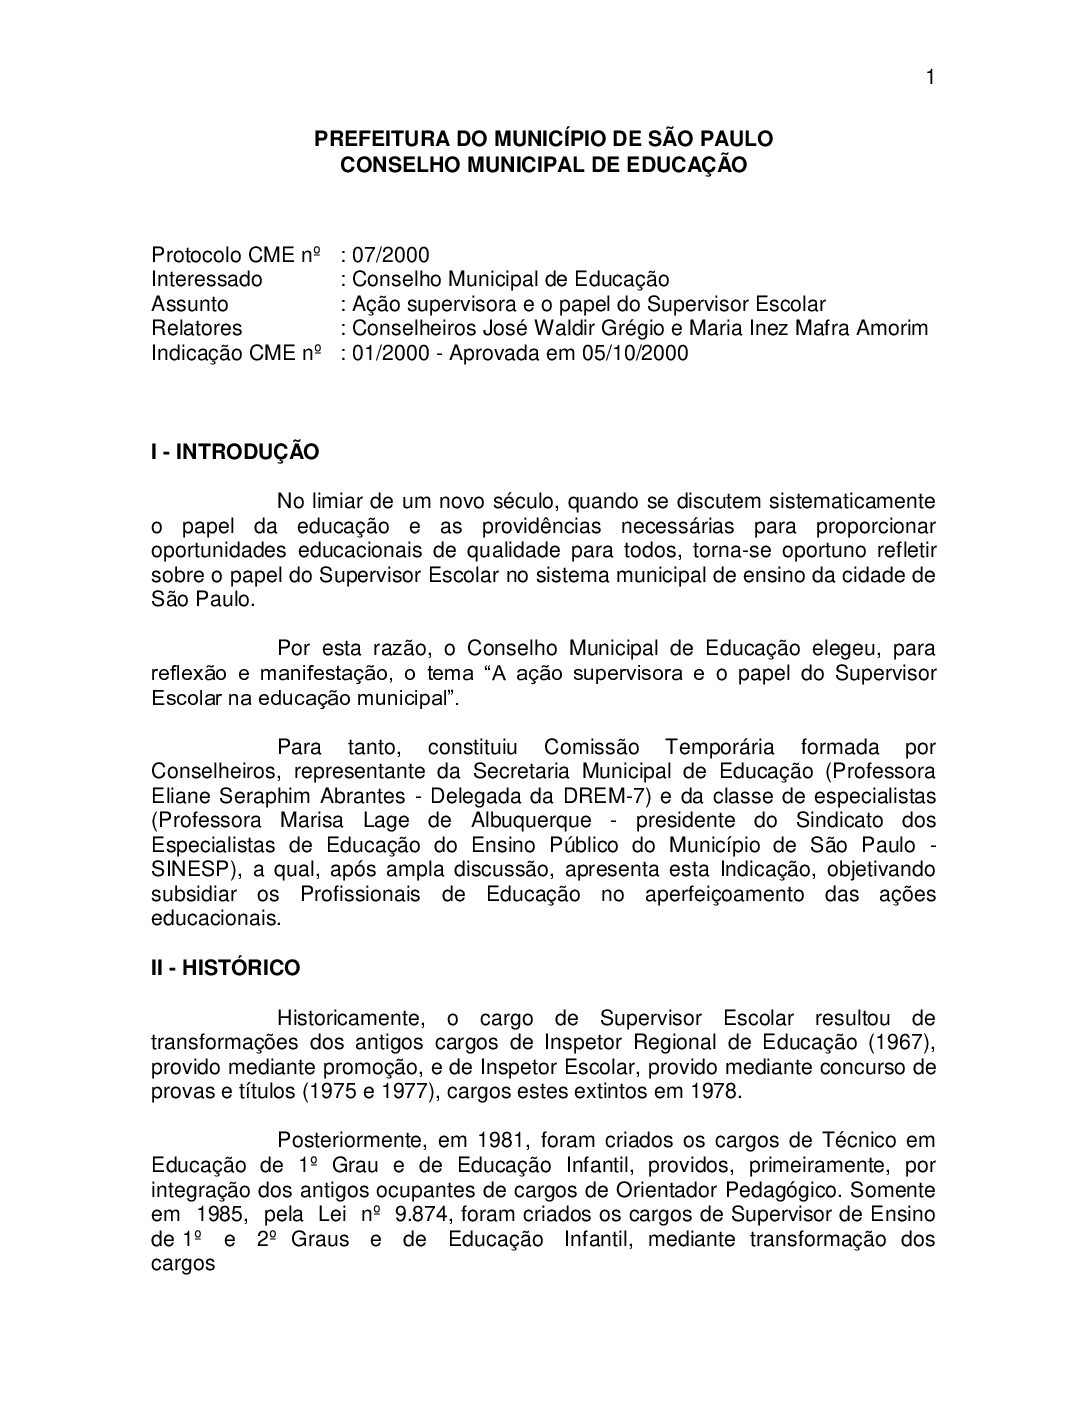 Indicação CME nº 01/2000 - Ação supervisora e o papel do Supervisor Escolar